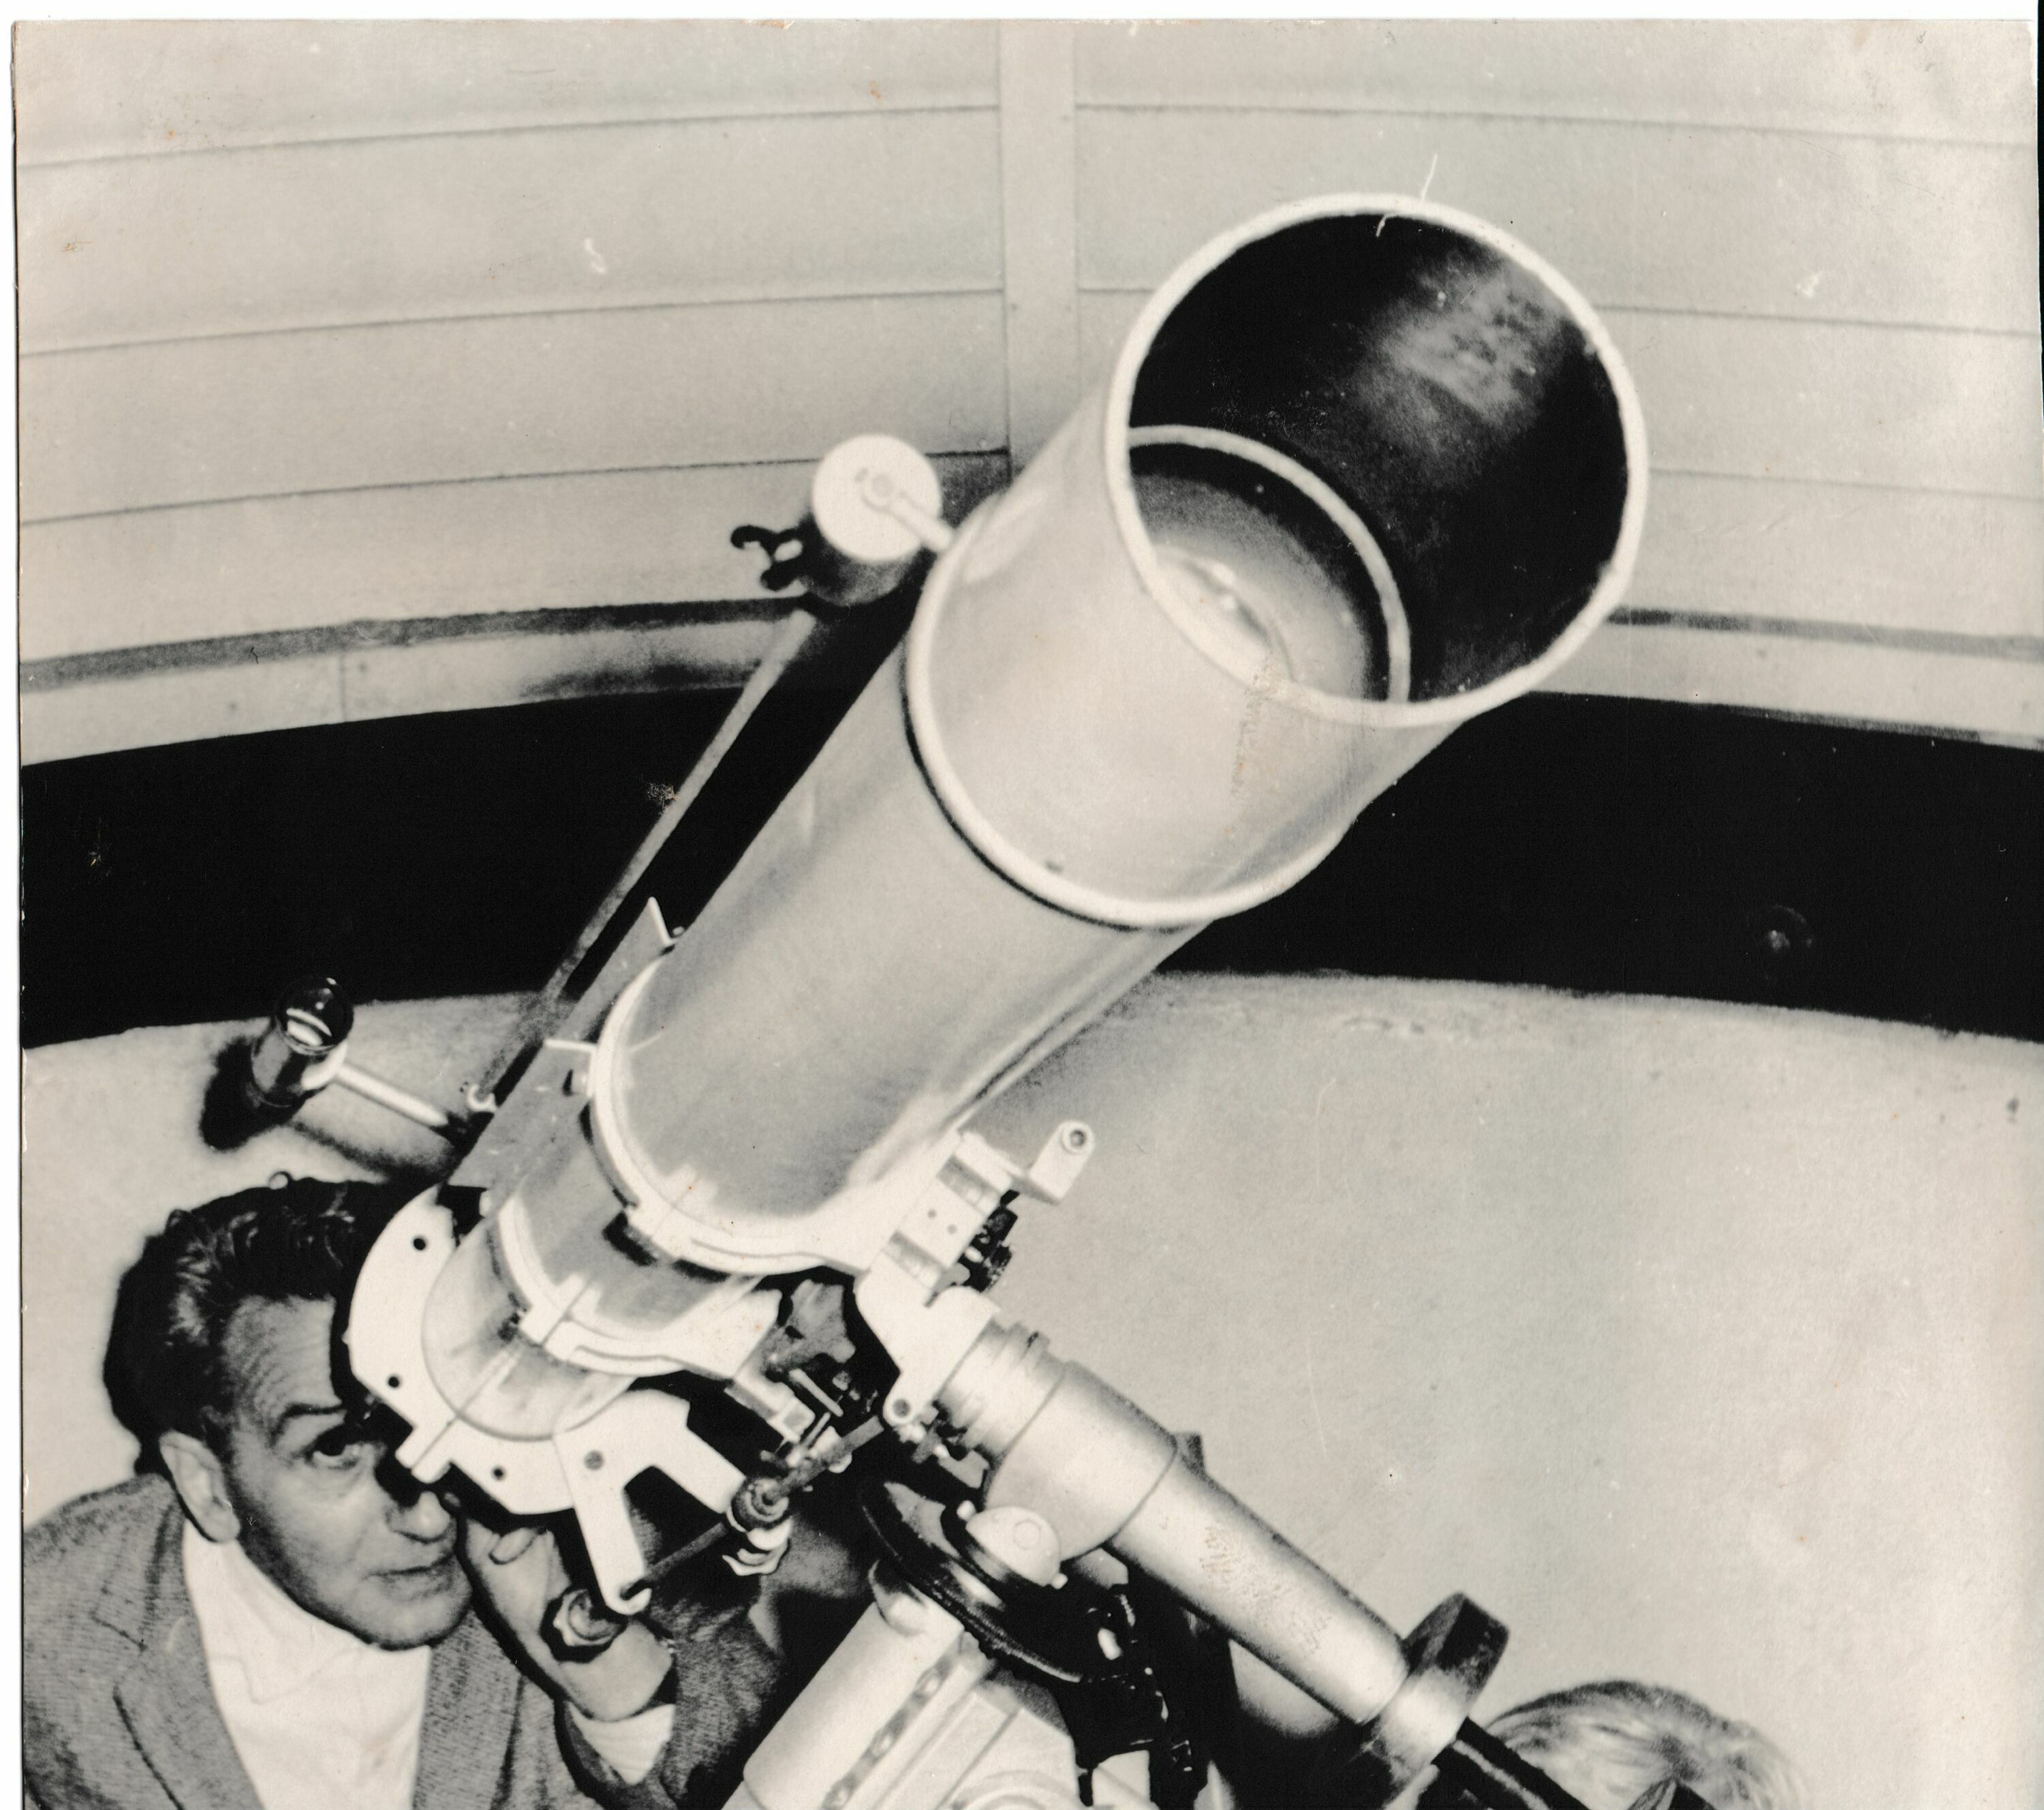 Foto in Vergrößerungsansicht öffnen: Schrzweiß-Foto von 1965. Erich Bär, Leiter der Volkssternwarte, schaut in der linken unteren Bildecke in ein durch die Aufnahmeperspektive riesig erscheinendes Fernrohr, welches diagonal nach rechts oben das gesamte Bild einnimmt.